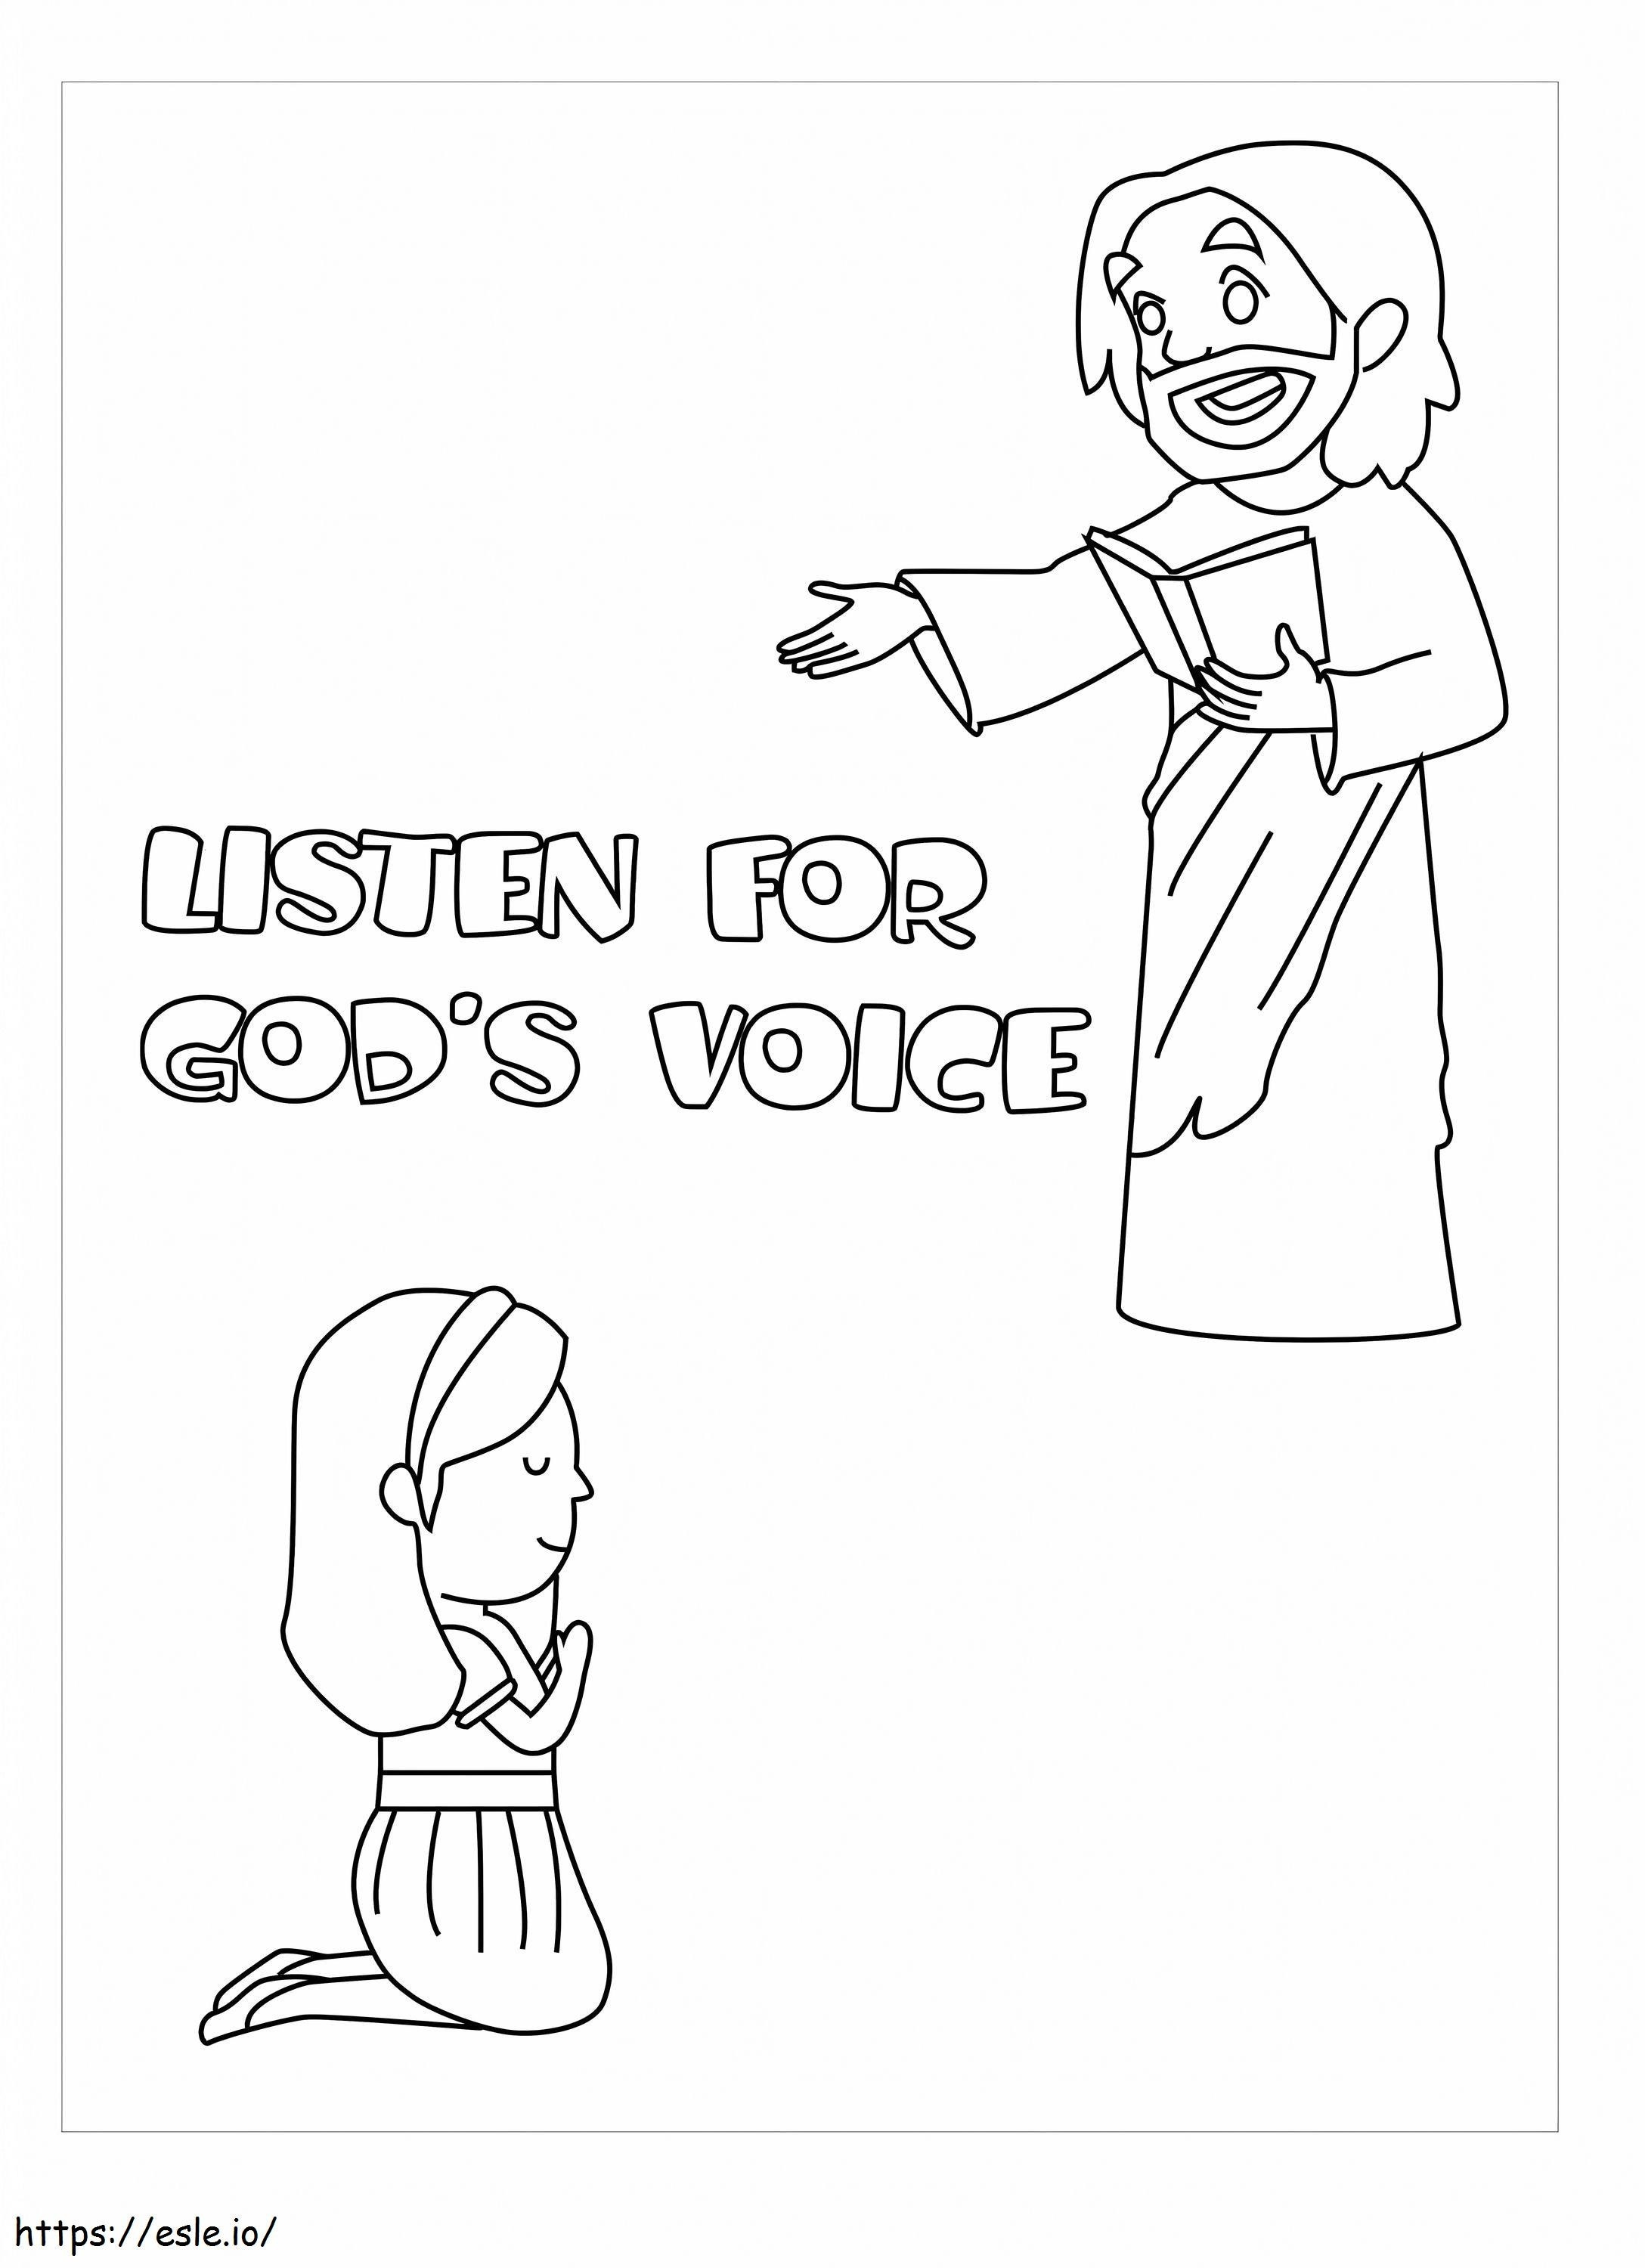 Tanrının Sesini Dinleyin boyama